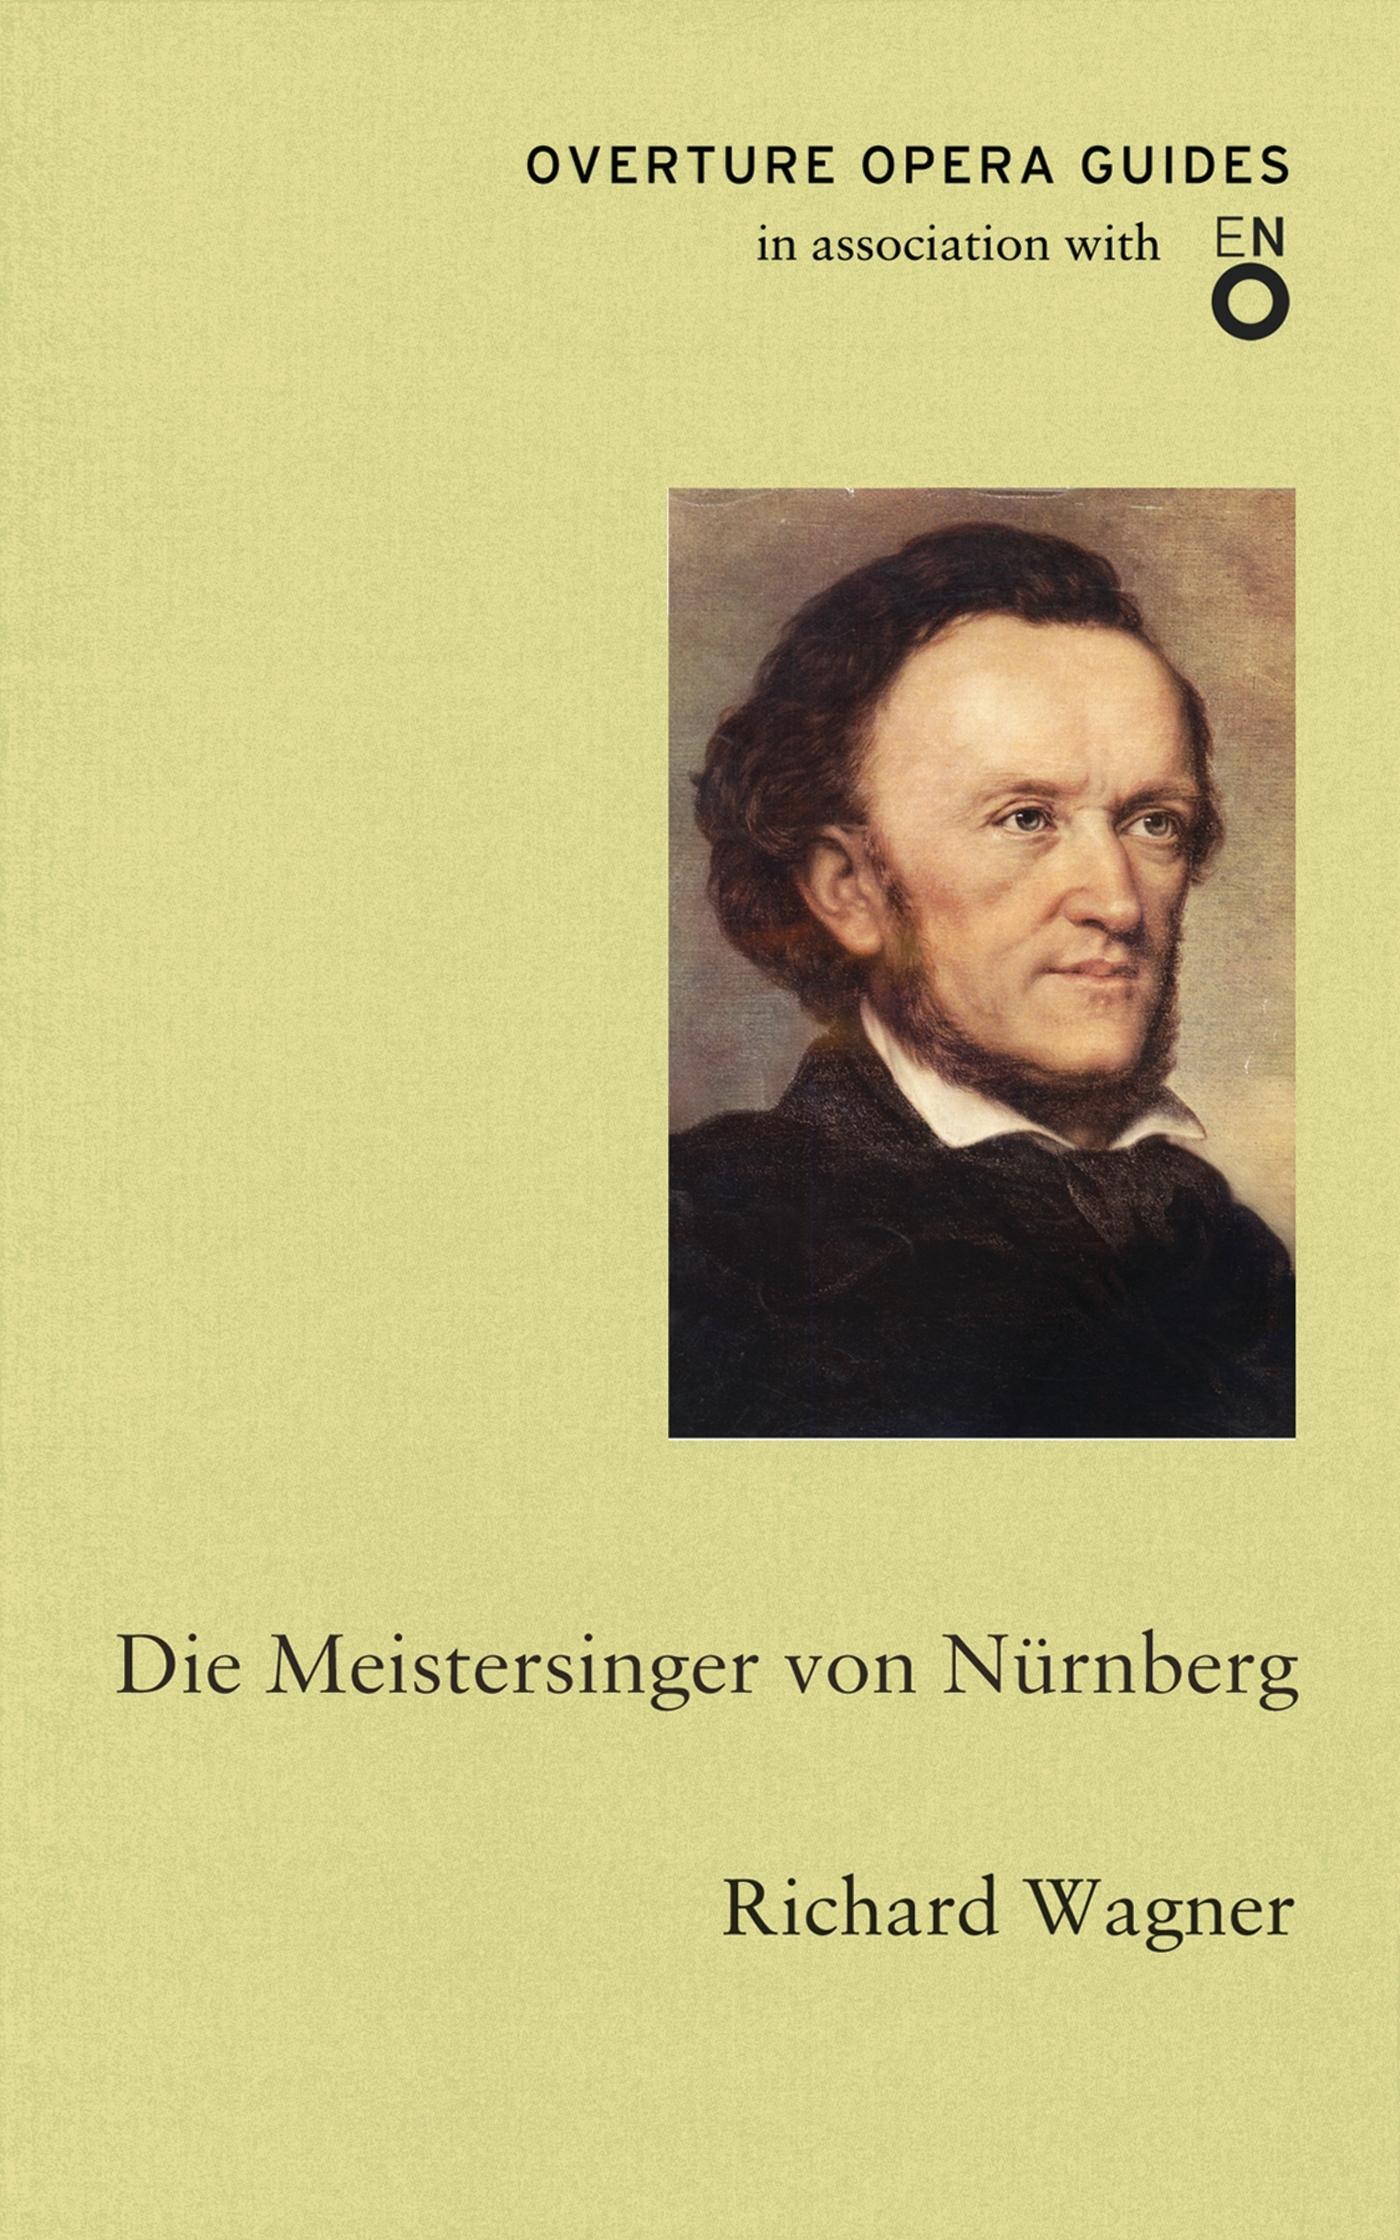 Die Meistersinger von Nurnberg (The Mastersingers of Nuremberg) / Richard Wagner / Taschenbuch / Overture Opera Guides in Association with the English National Opera (ENO) / Kartoniert / Broschiert - Wagner, Richard